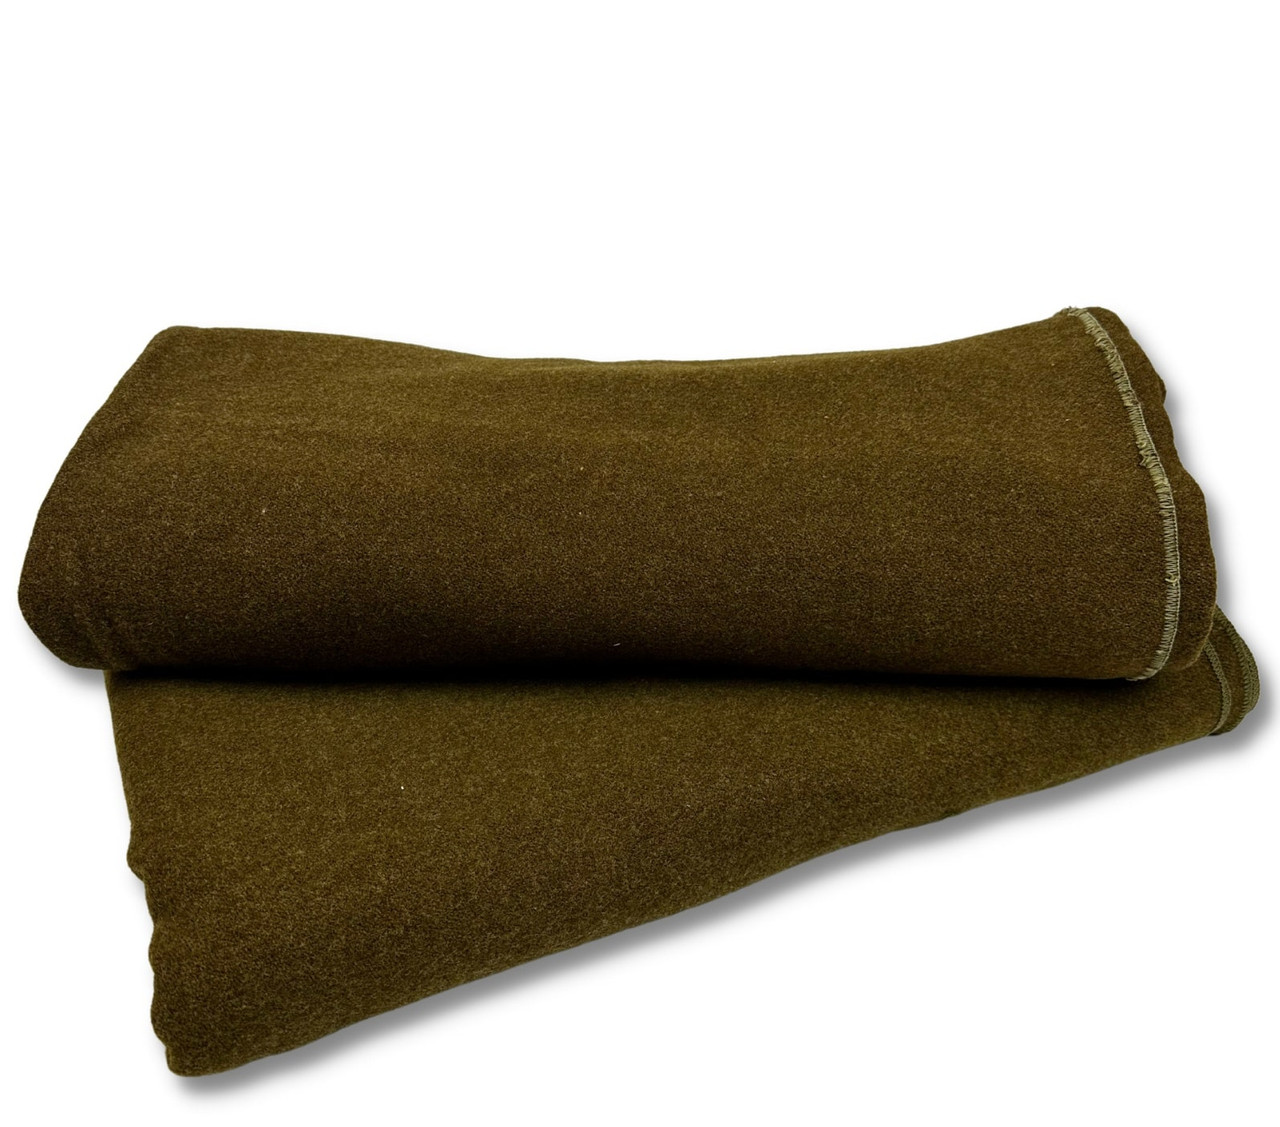 Image of Vintage U.S. Made WWII Army Wool Blanket